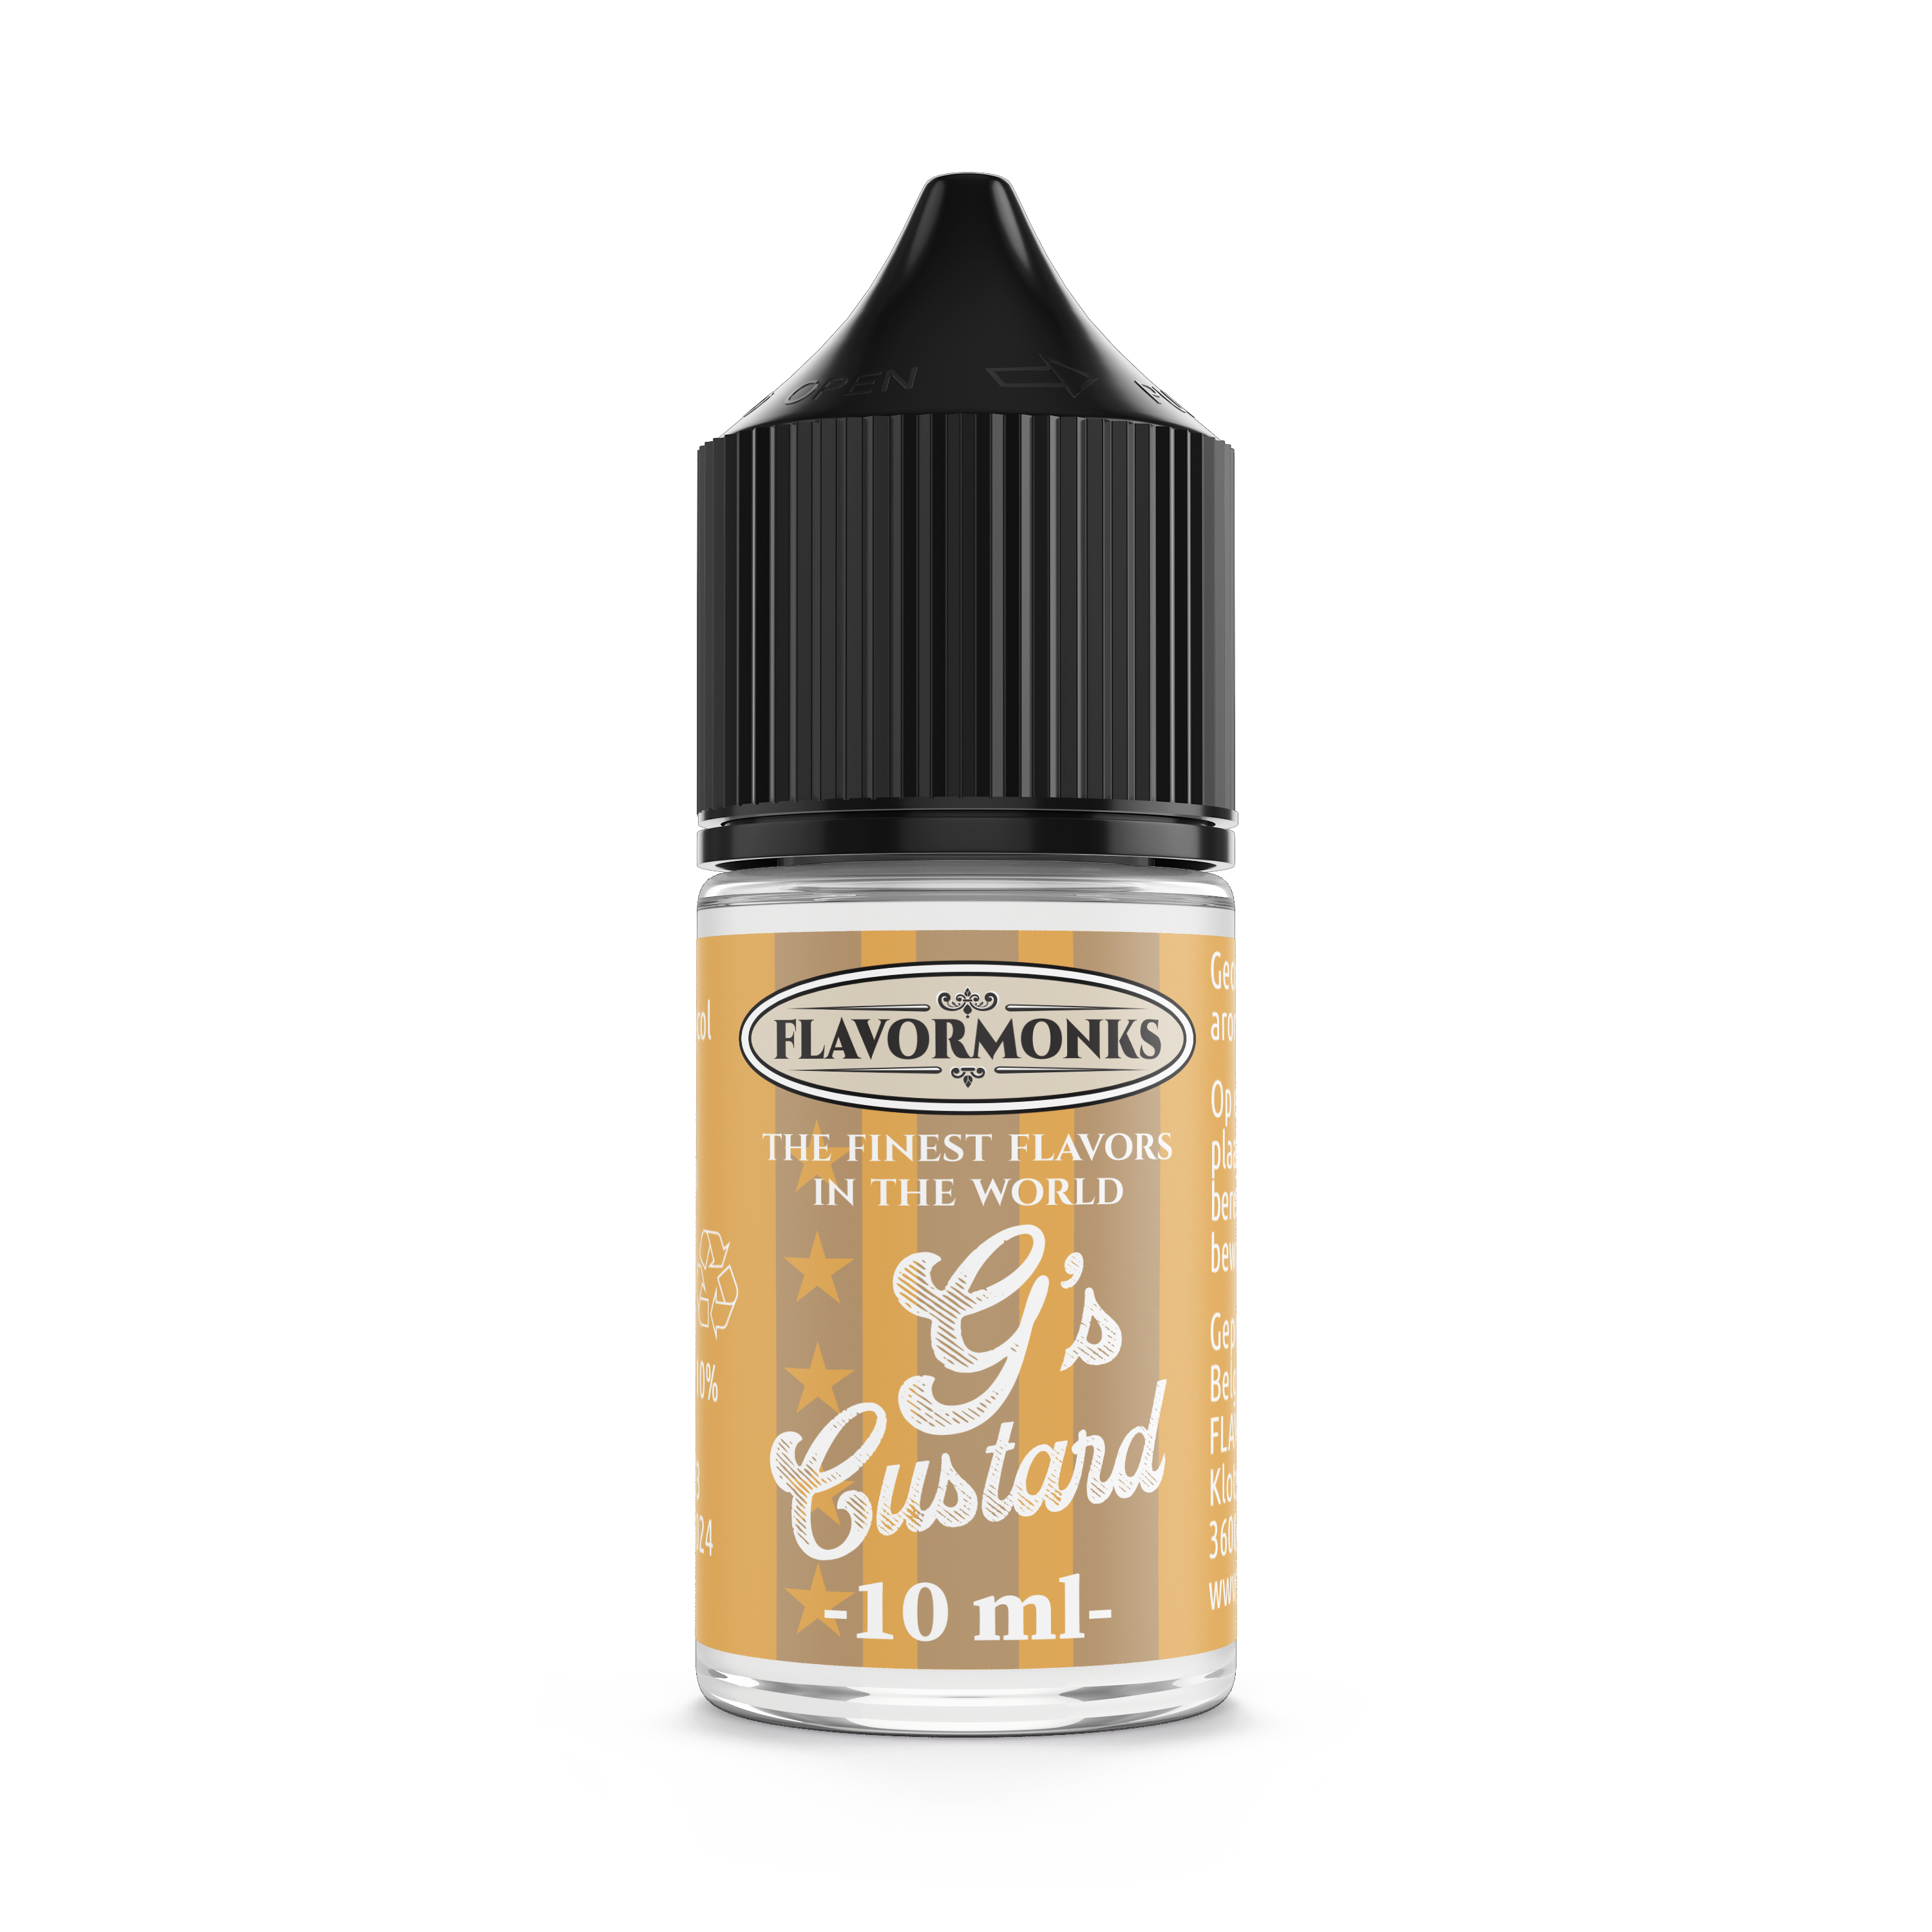 G's Custard aroma - Flavormonks